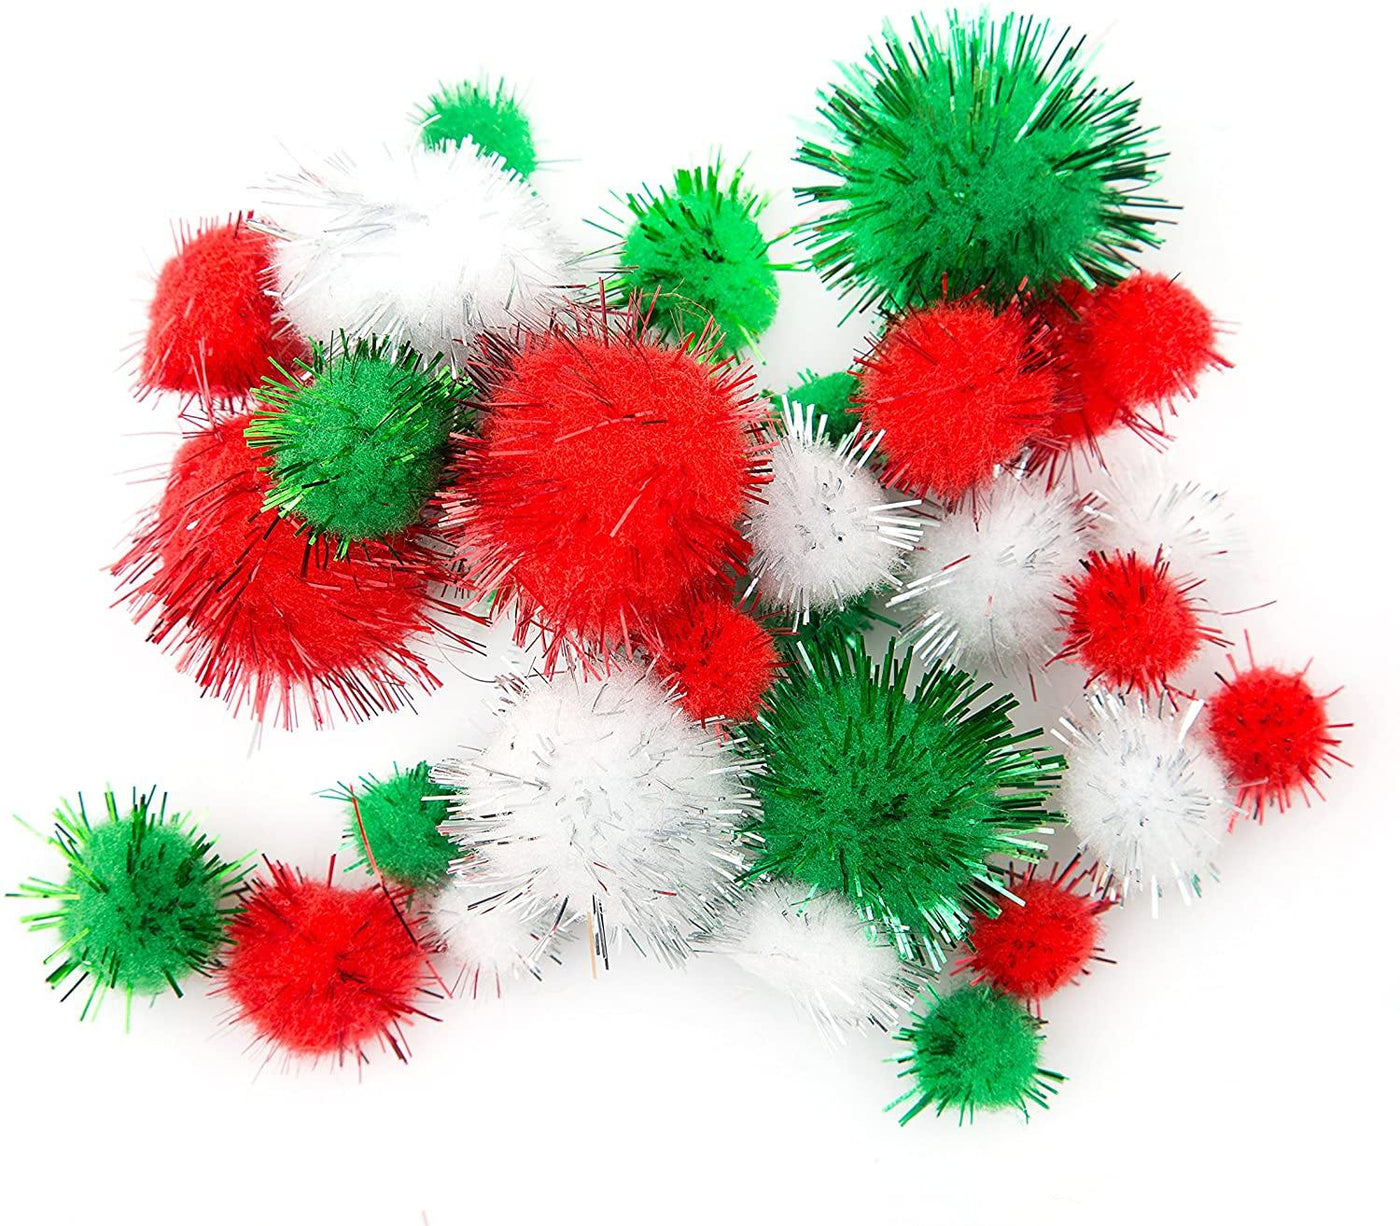 500 Pieces Christmas Pom Poms Assorted Glitter Pom Poms For